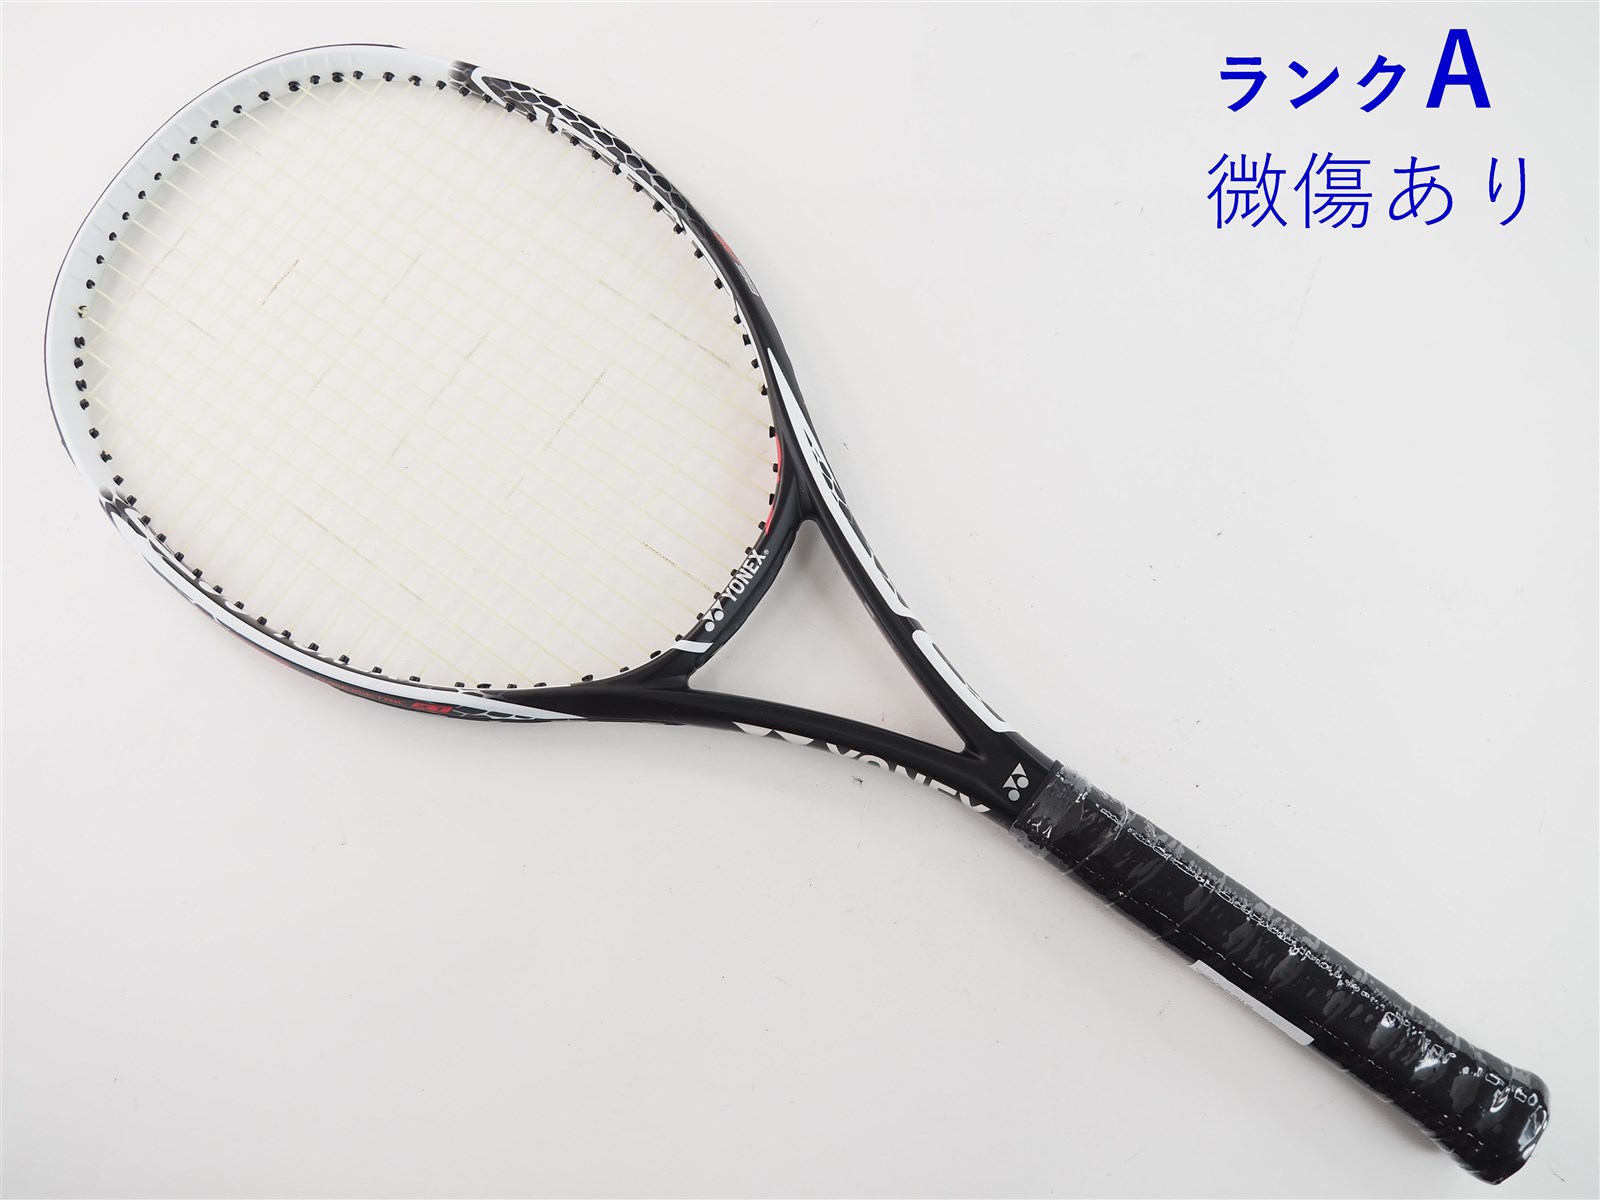 テニスラケット ヨネックス ブイコア プロ 97 BE 2018年モデル